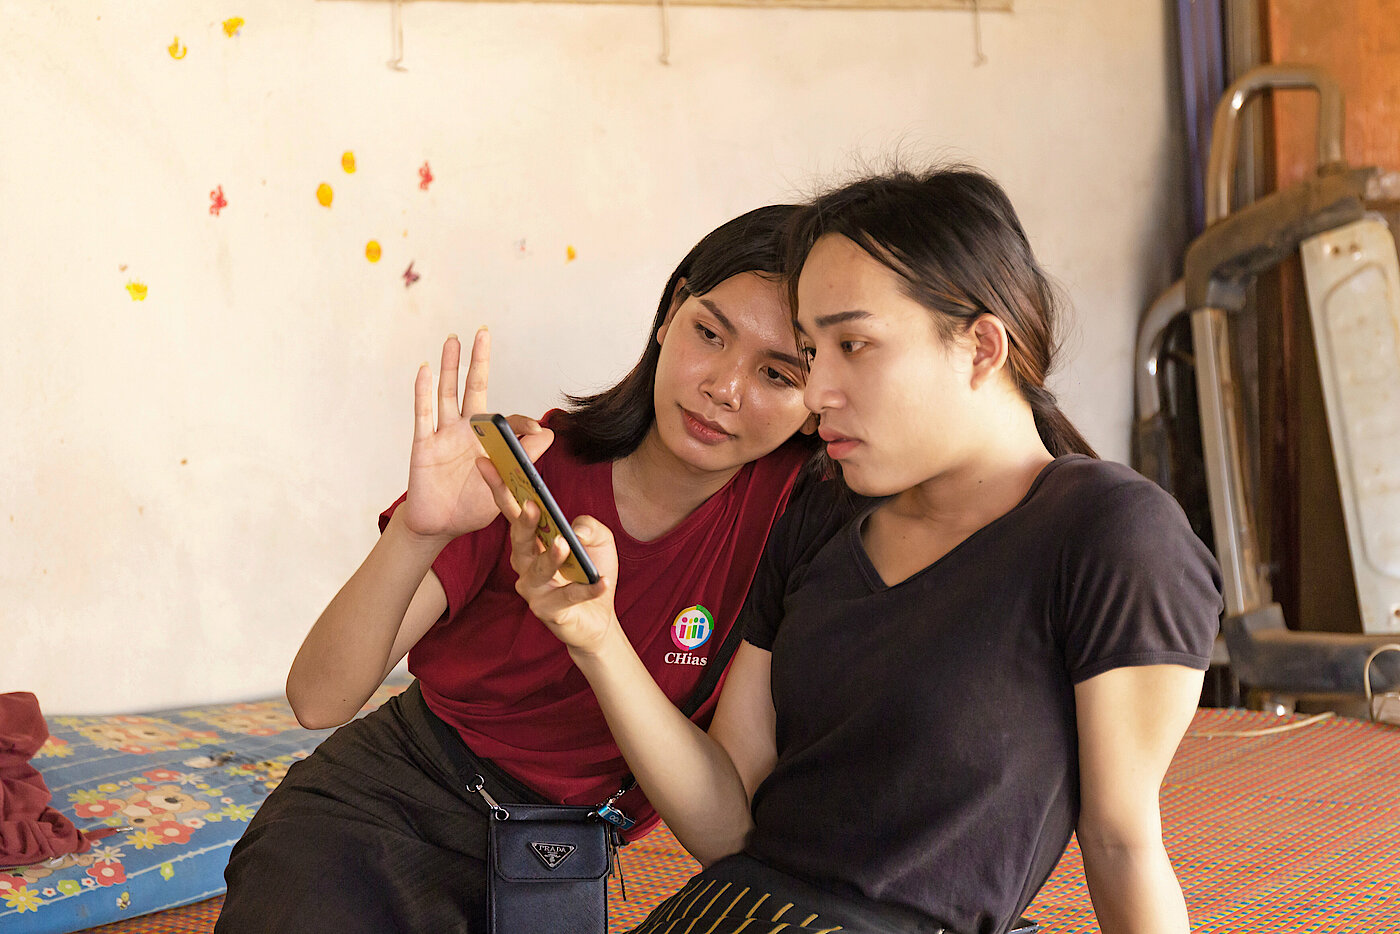 Foto: Zwei junge Frauen schauen zusammen auf ein Smartphone.